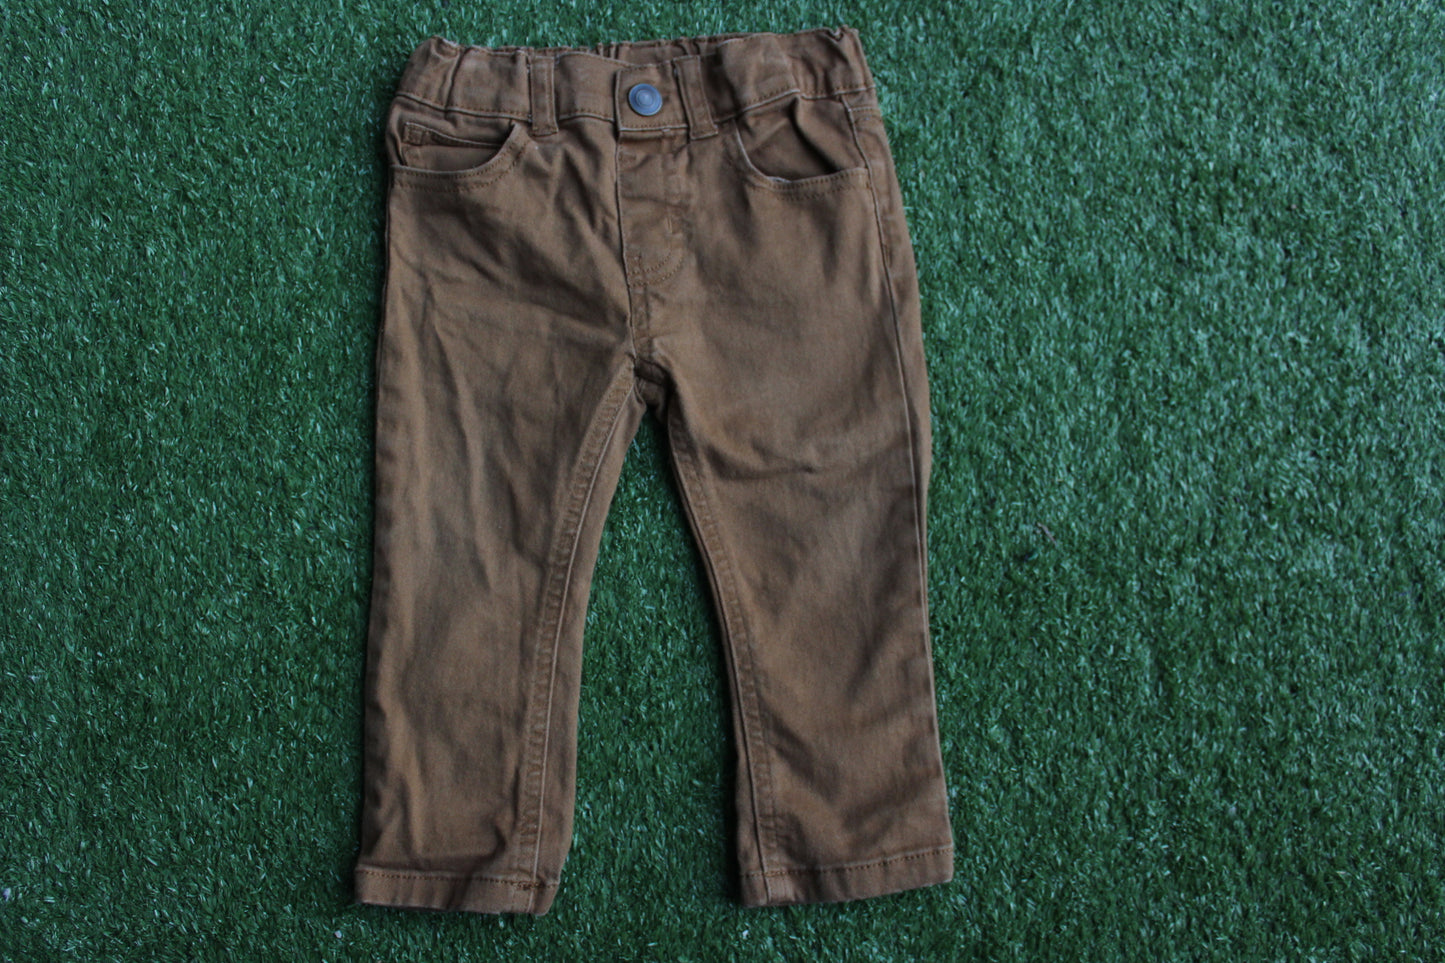 Khaki pants (18mon)